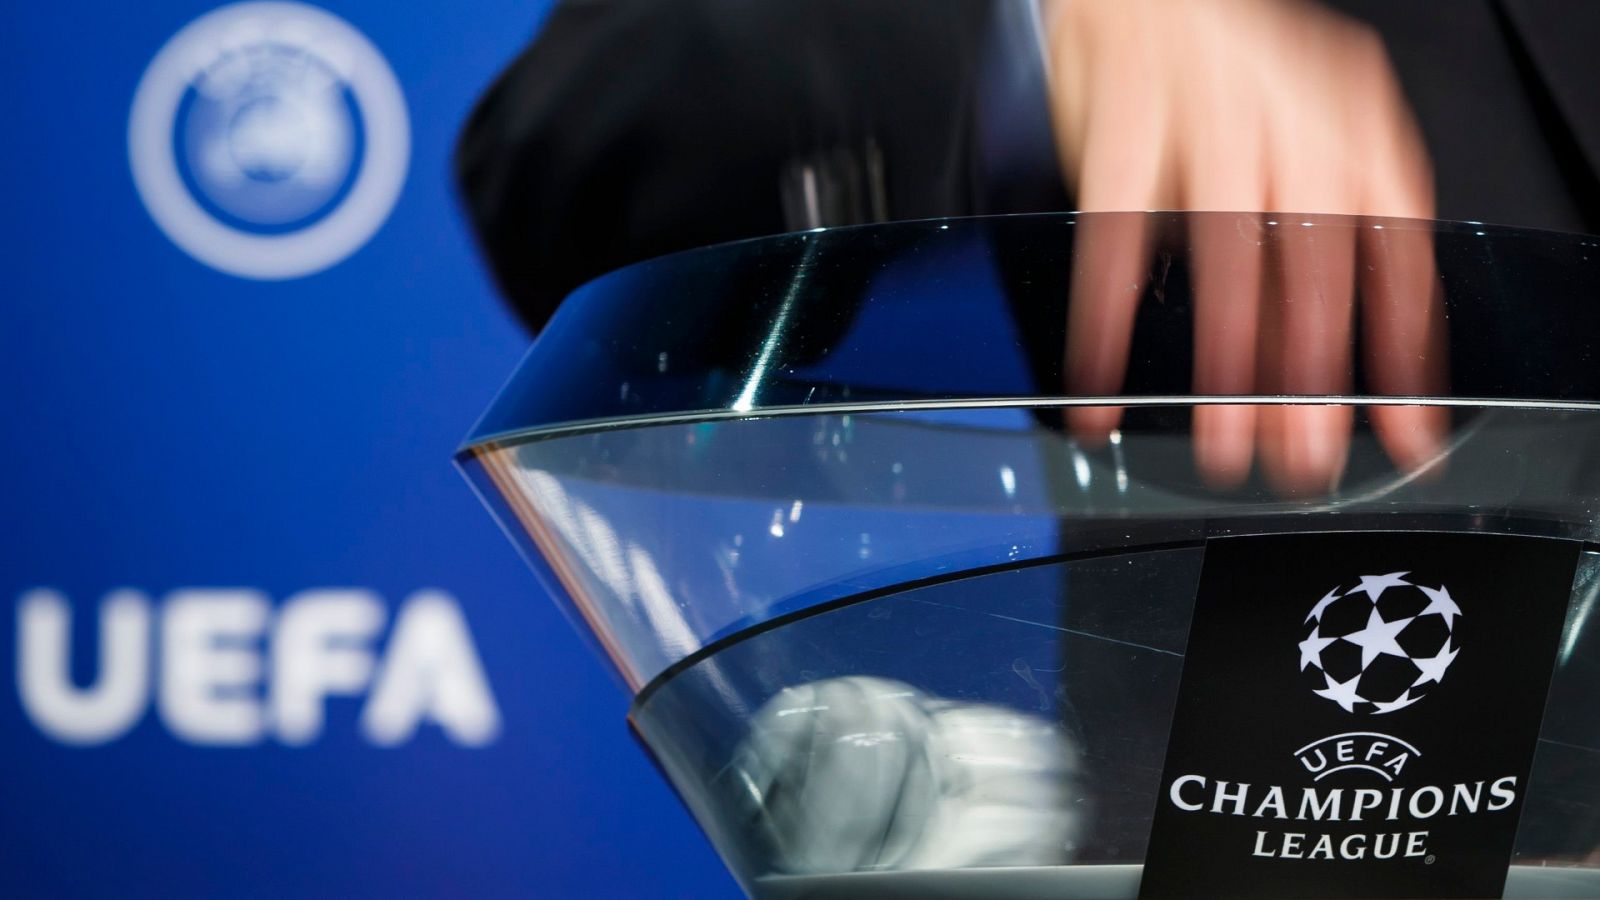 La federaciones elegirán los clasificados para competiciones europeas si no hay liga